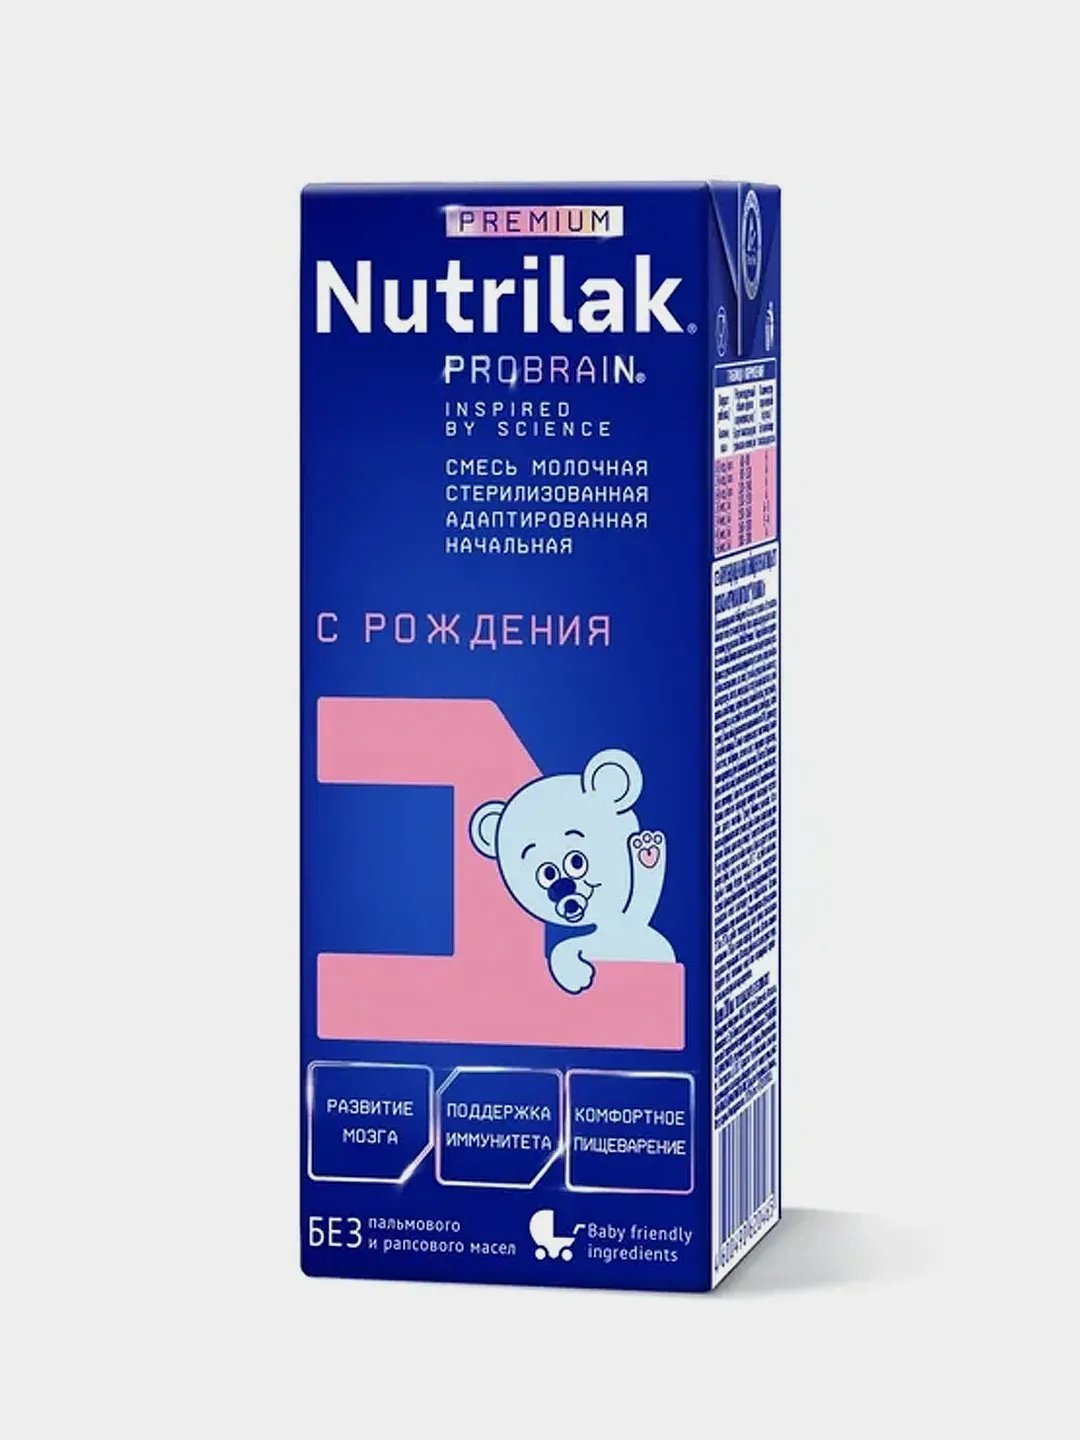 Nutrilak Premium 1. Нутрилак премиум 1,05 кг штрих. Nutrilak Premium 1 готовая к употреблению, с рождения отзывы. Смесь Нутрилак 1 премиум стерилизованная вред. Nutrilak 1 готовая